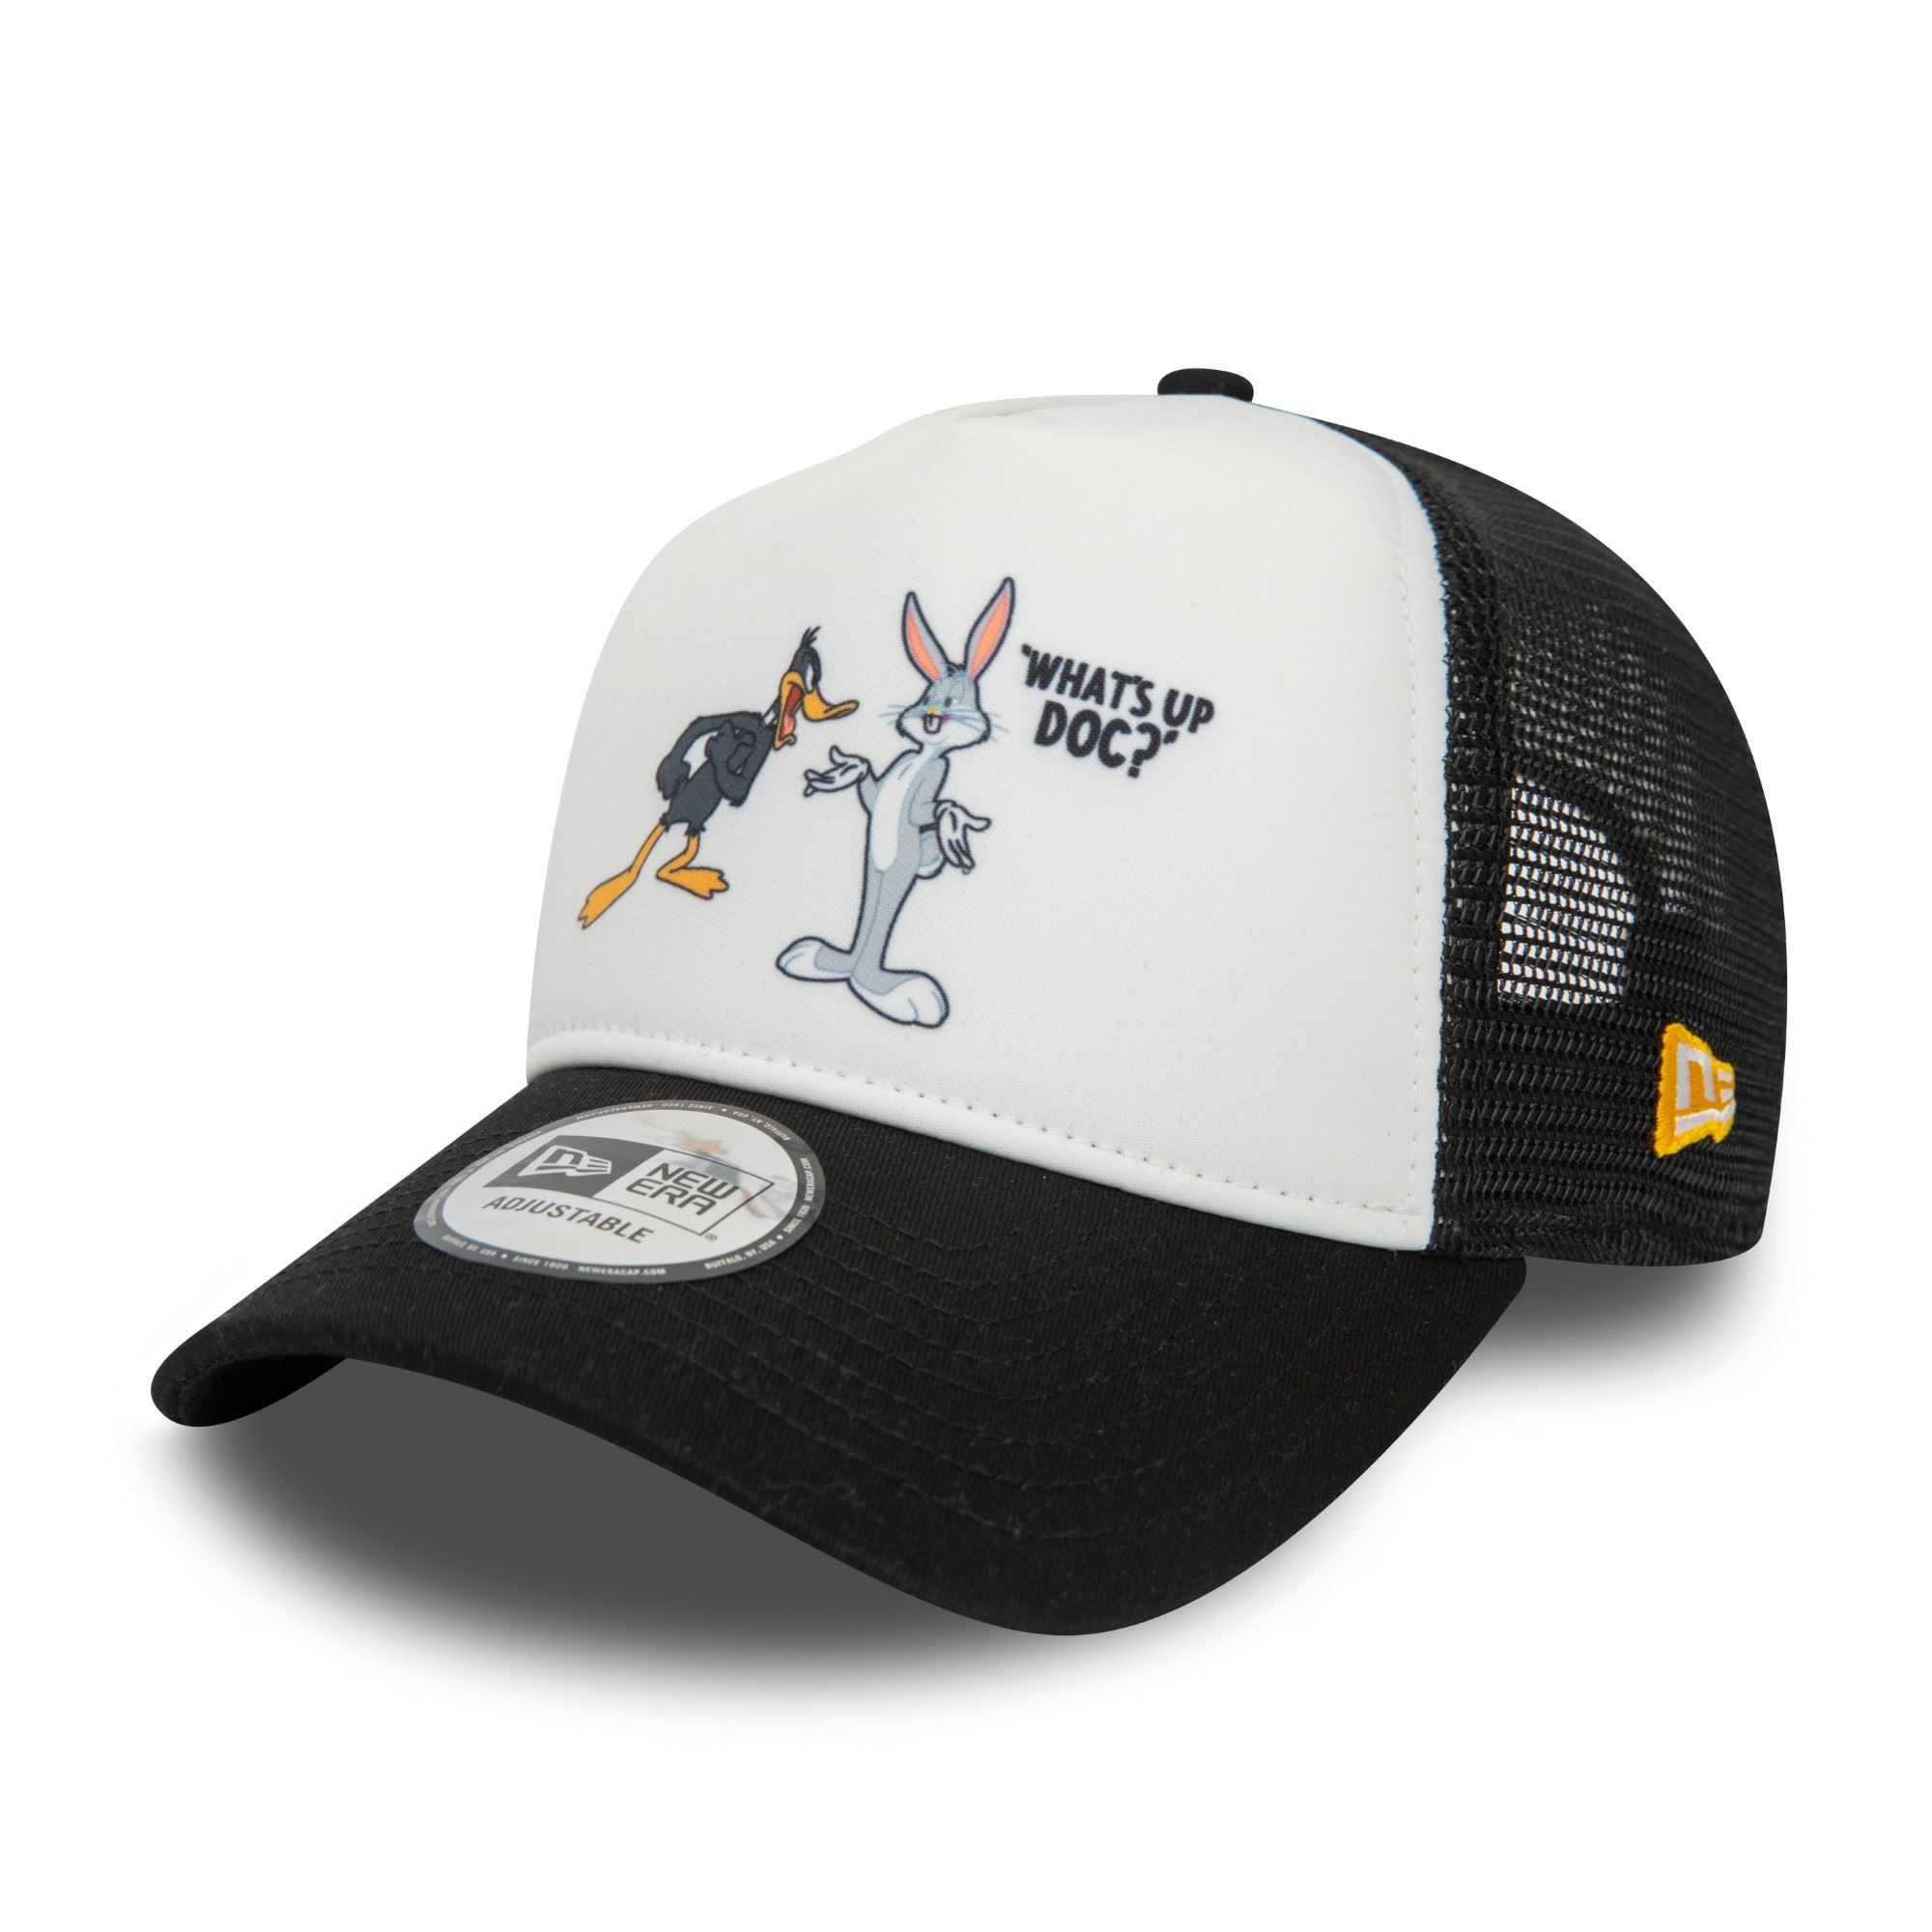 Bugs Bunny und Daffy Duck Looney Tunes Character Schwarz Weiß Verstellbare A-Frame Trucker Cap New Era